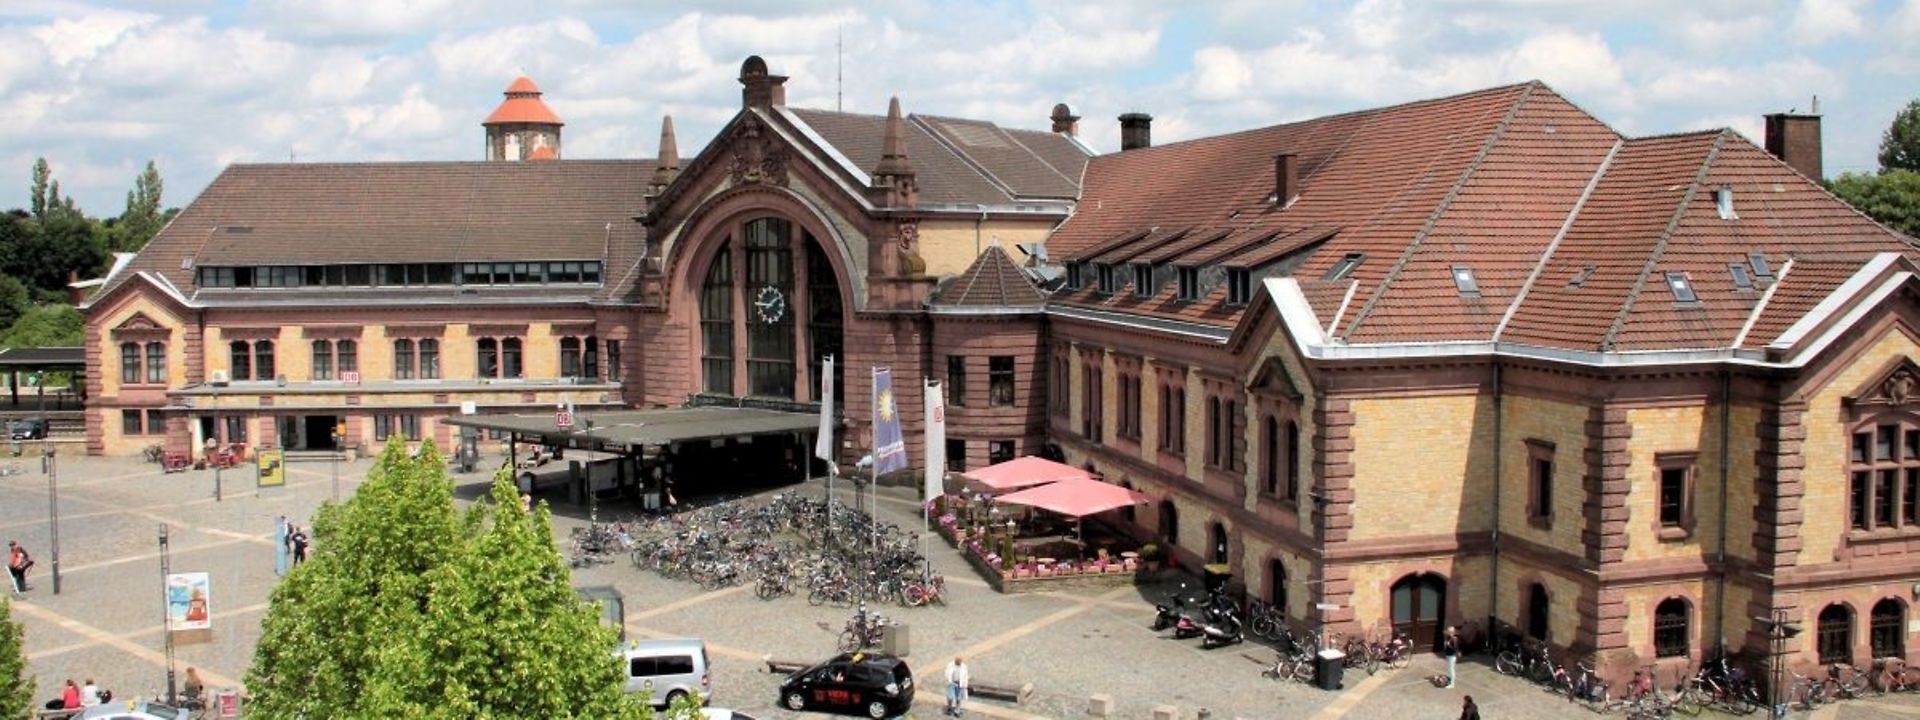 Empfangsgebäude Osnabrück